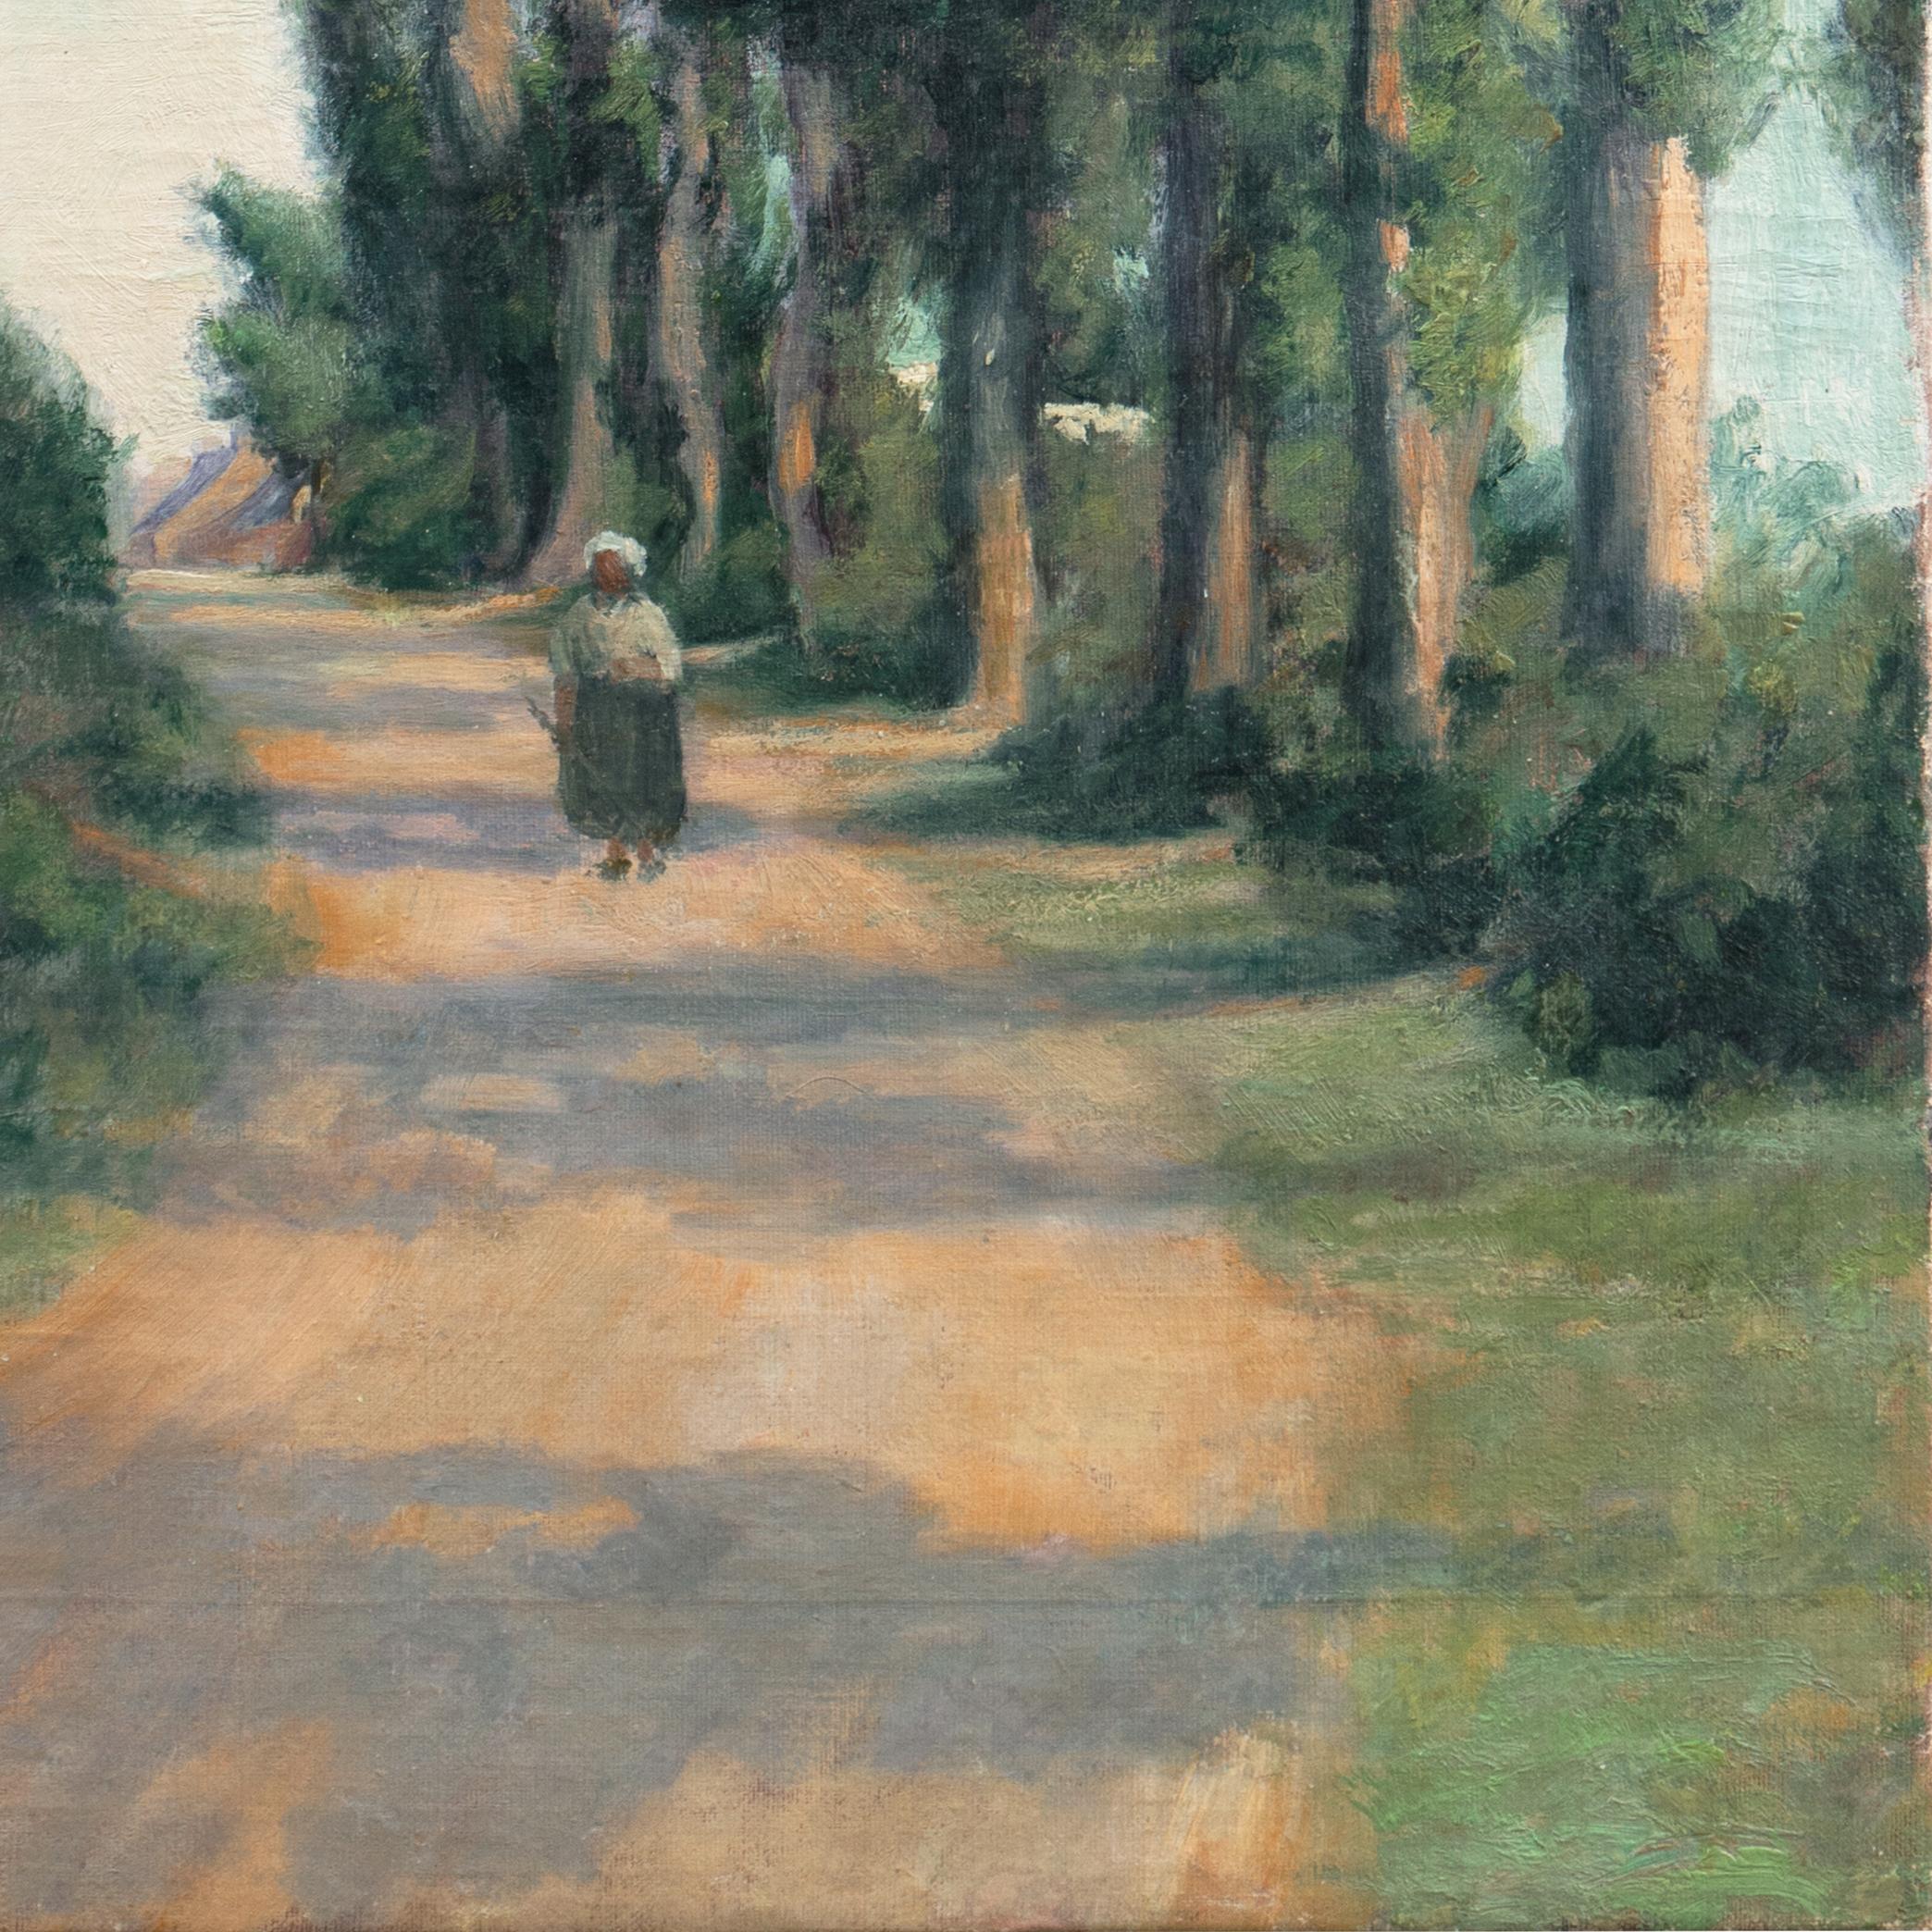 « Eucalyptus Road, Sunset », début du 20e siècle, paysage impressionniste américain - Impressionnisme américain Painting par American School